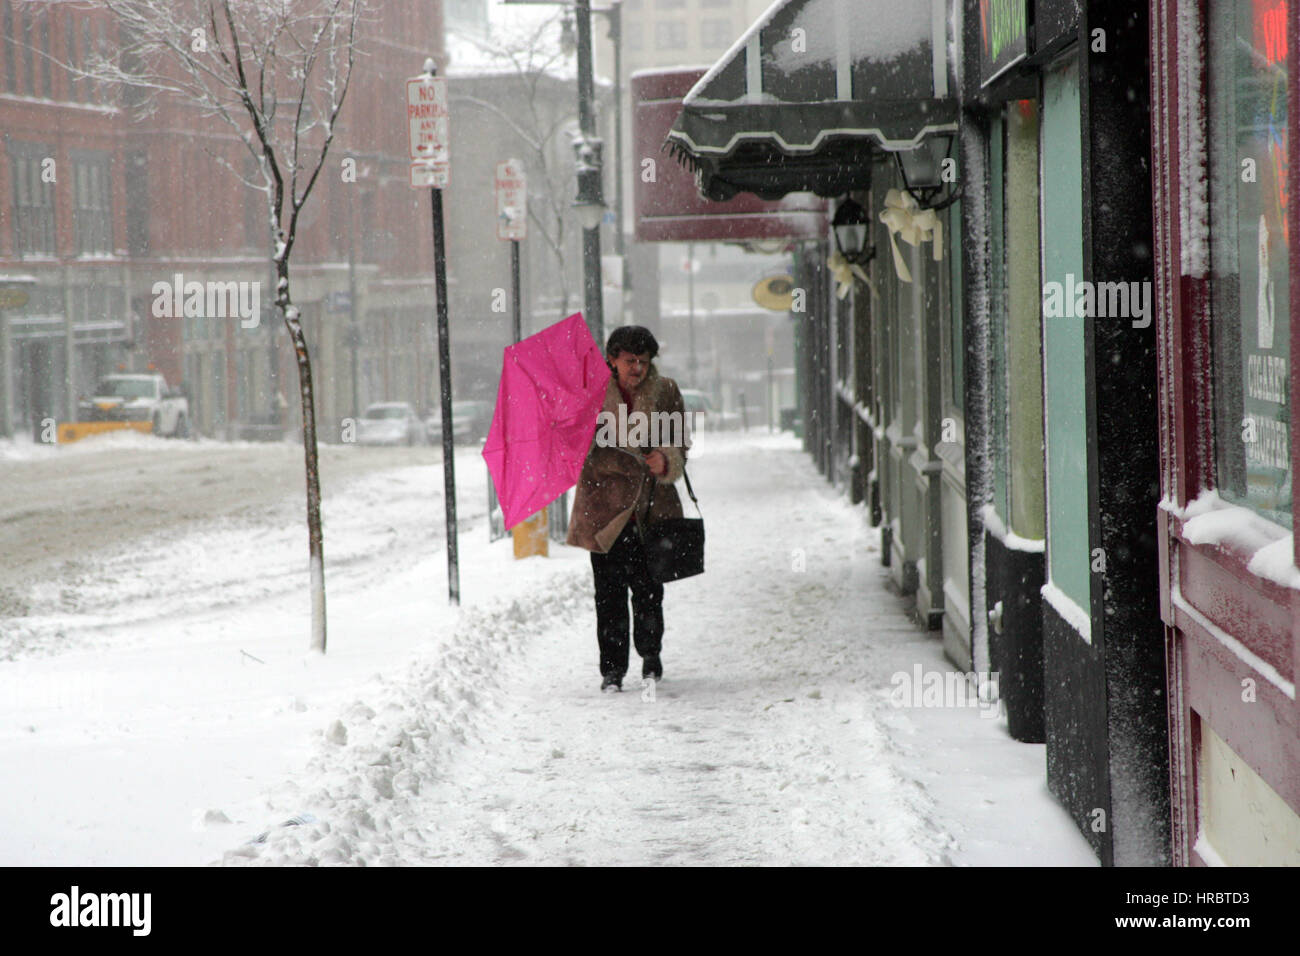 Tempesta di neve Downtown Portland Maine donna camminando sul marciapiede tempesta invernale neve New England USA meteo ghiaccio freddo vento invernale ombrello Foto Stock